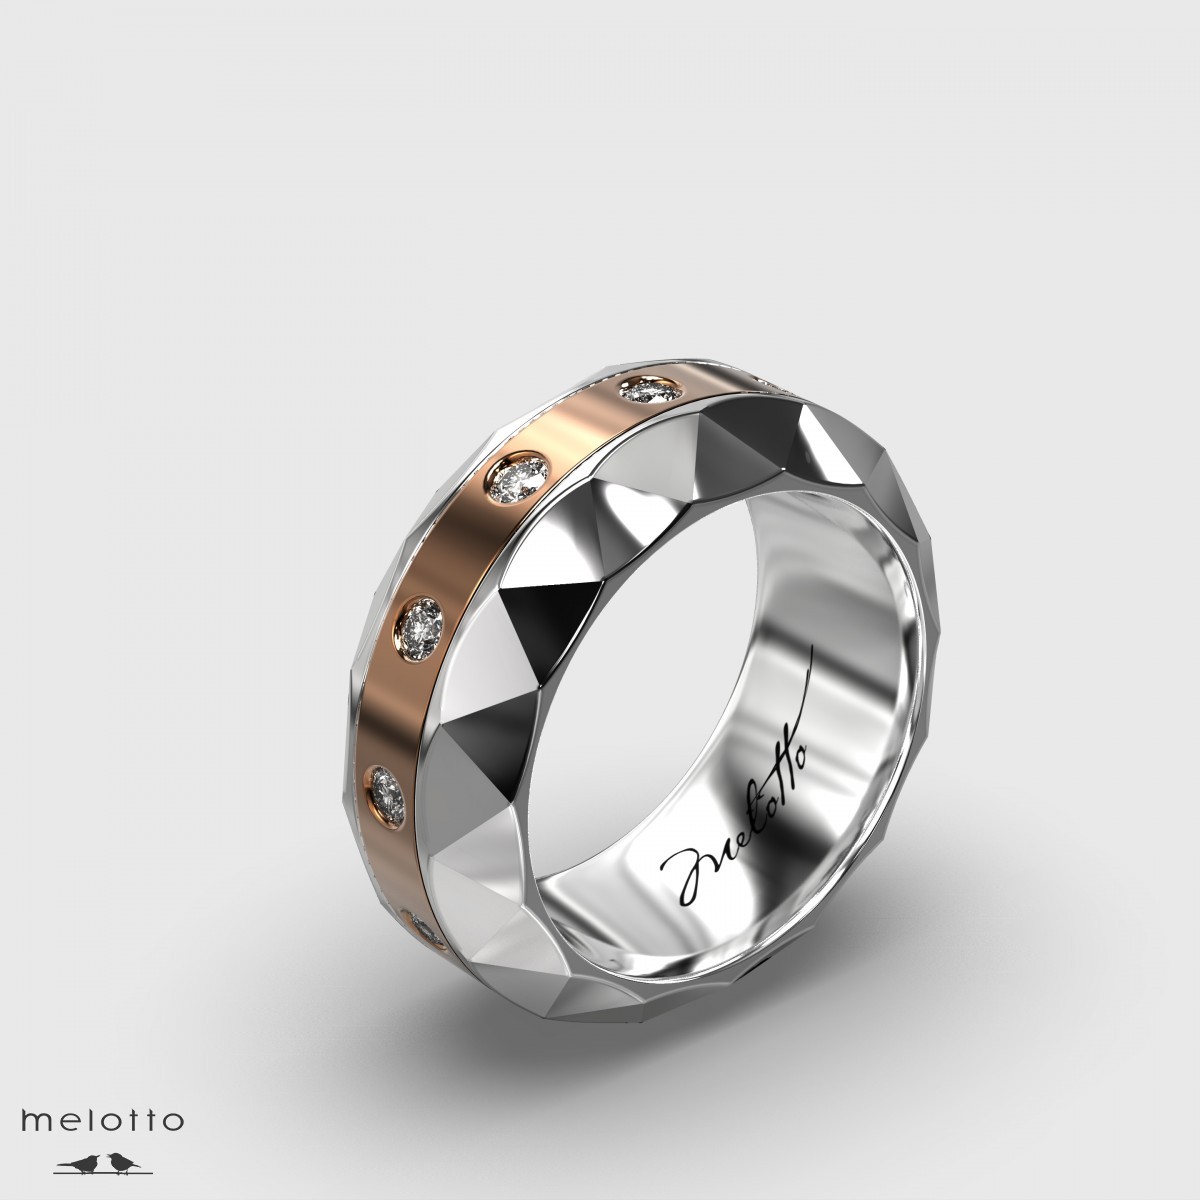 Бесконечное мужское кольцо с круглыми бриллиантами